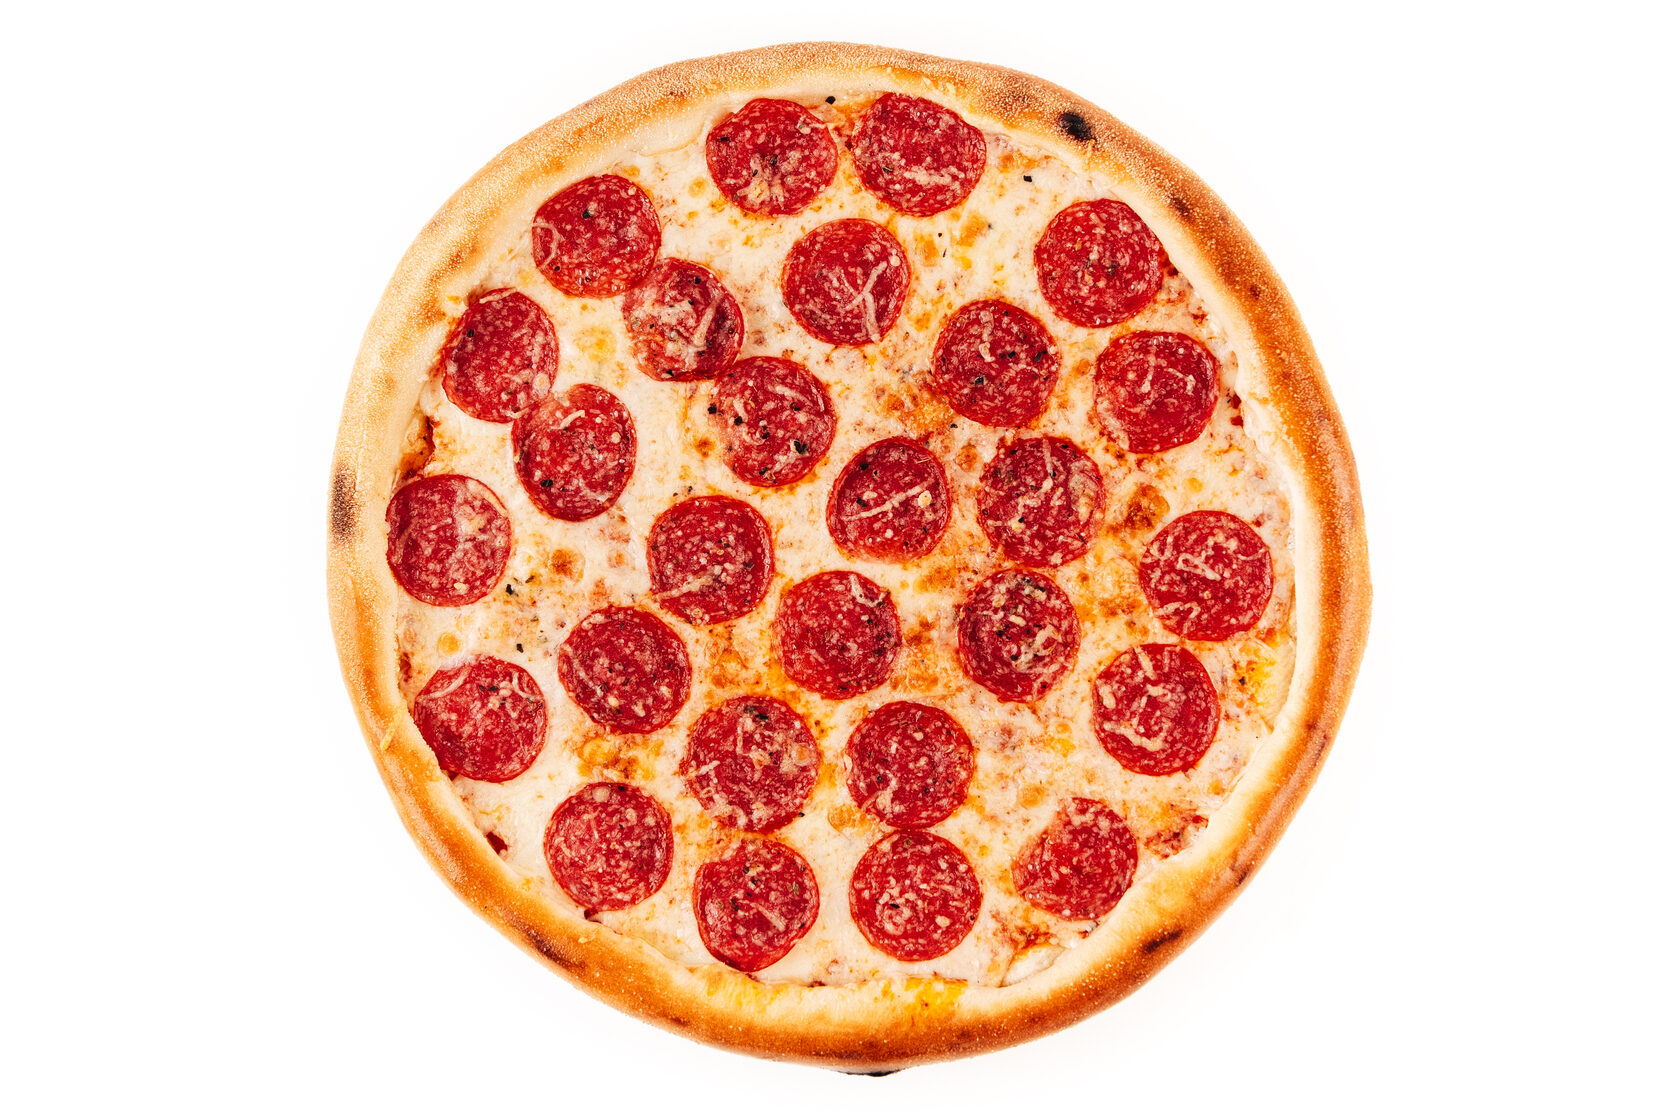 технологическая карта на пиццу пепперони фото 65